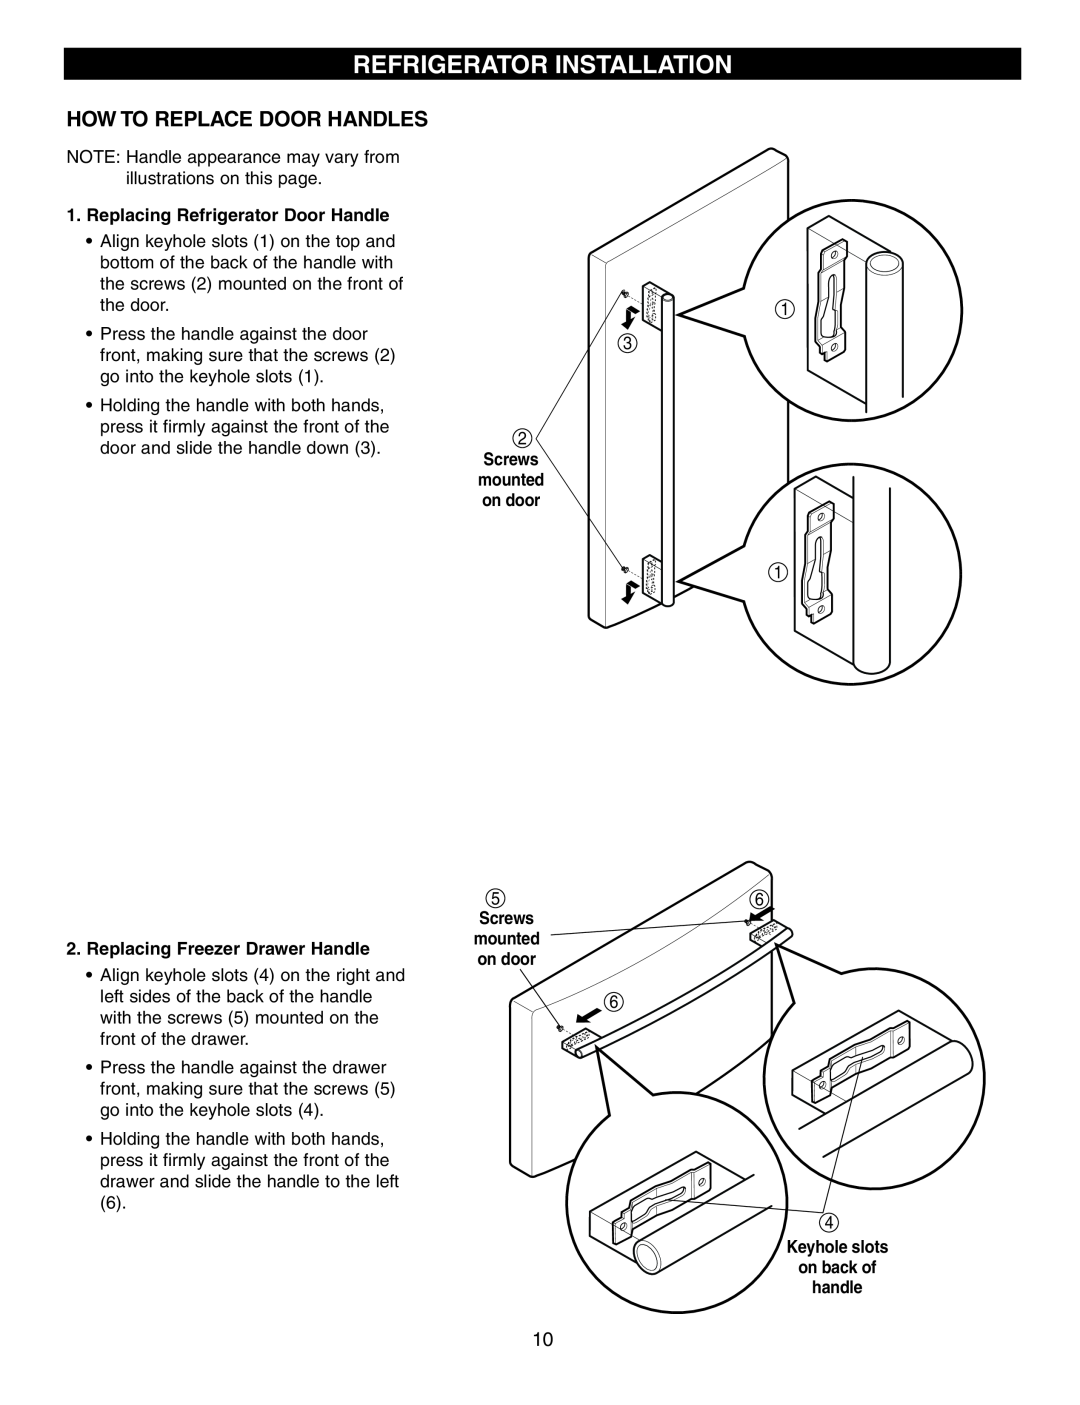 LG Electronics LRFD25850 manual Refrigerator Installation, How To Replace Door Handles, Replacing Refrigerator Door Handle 